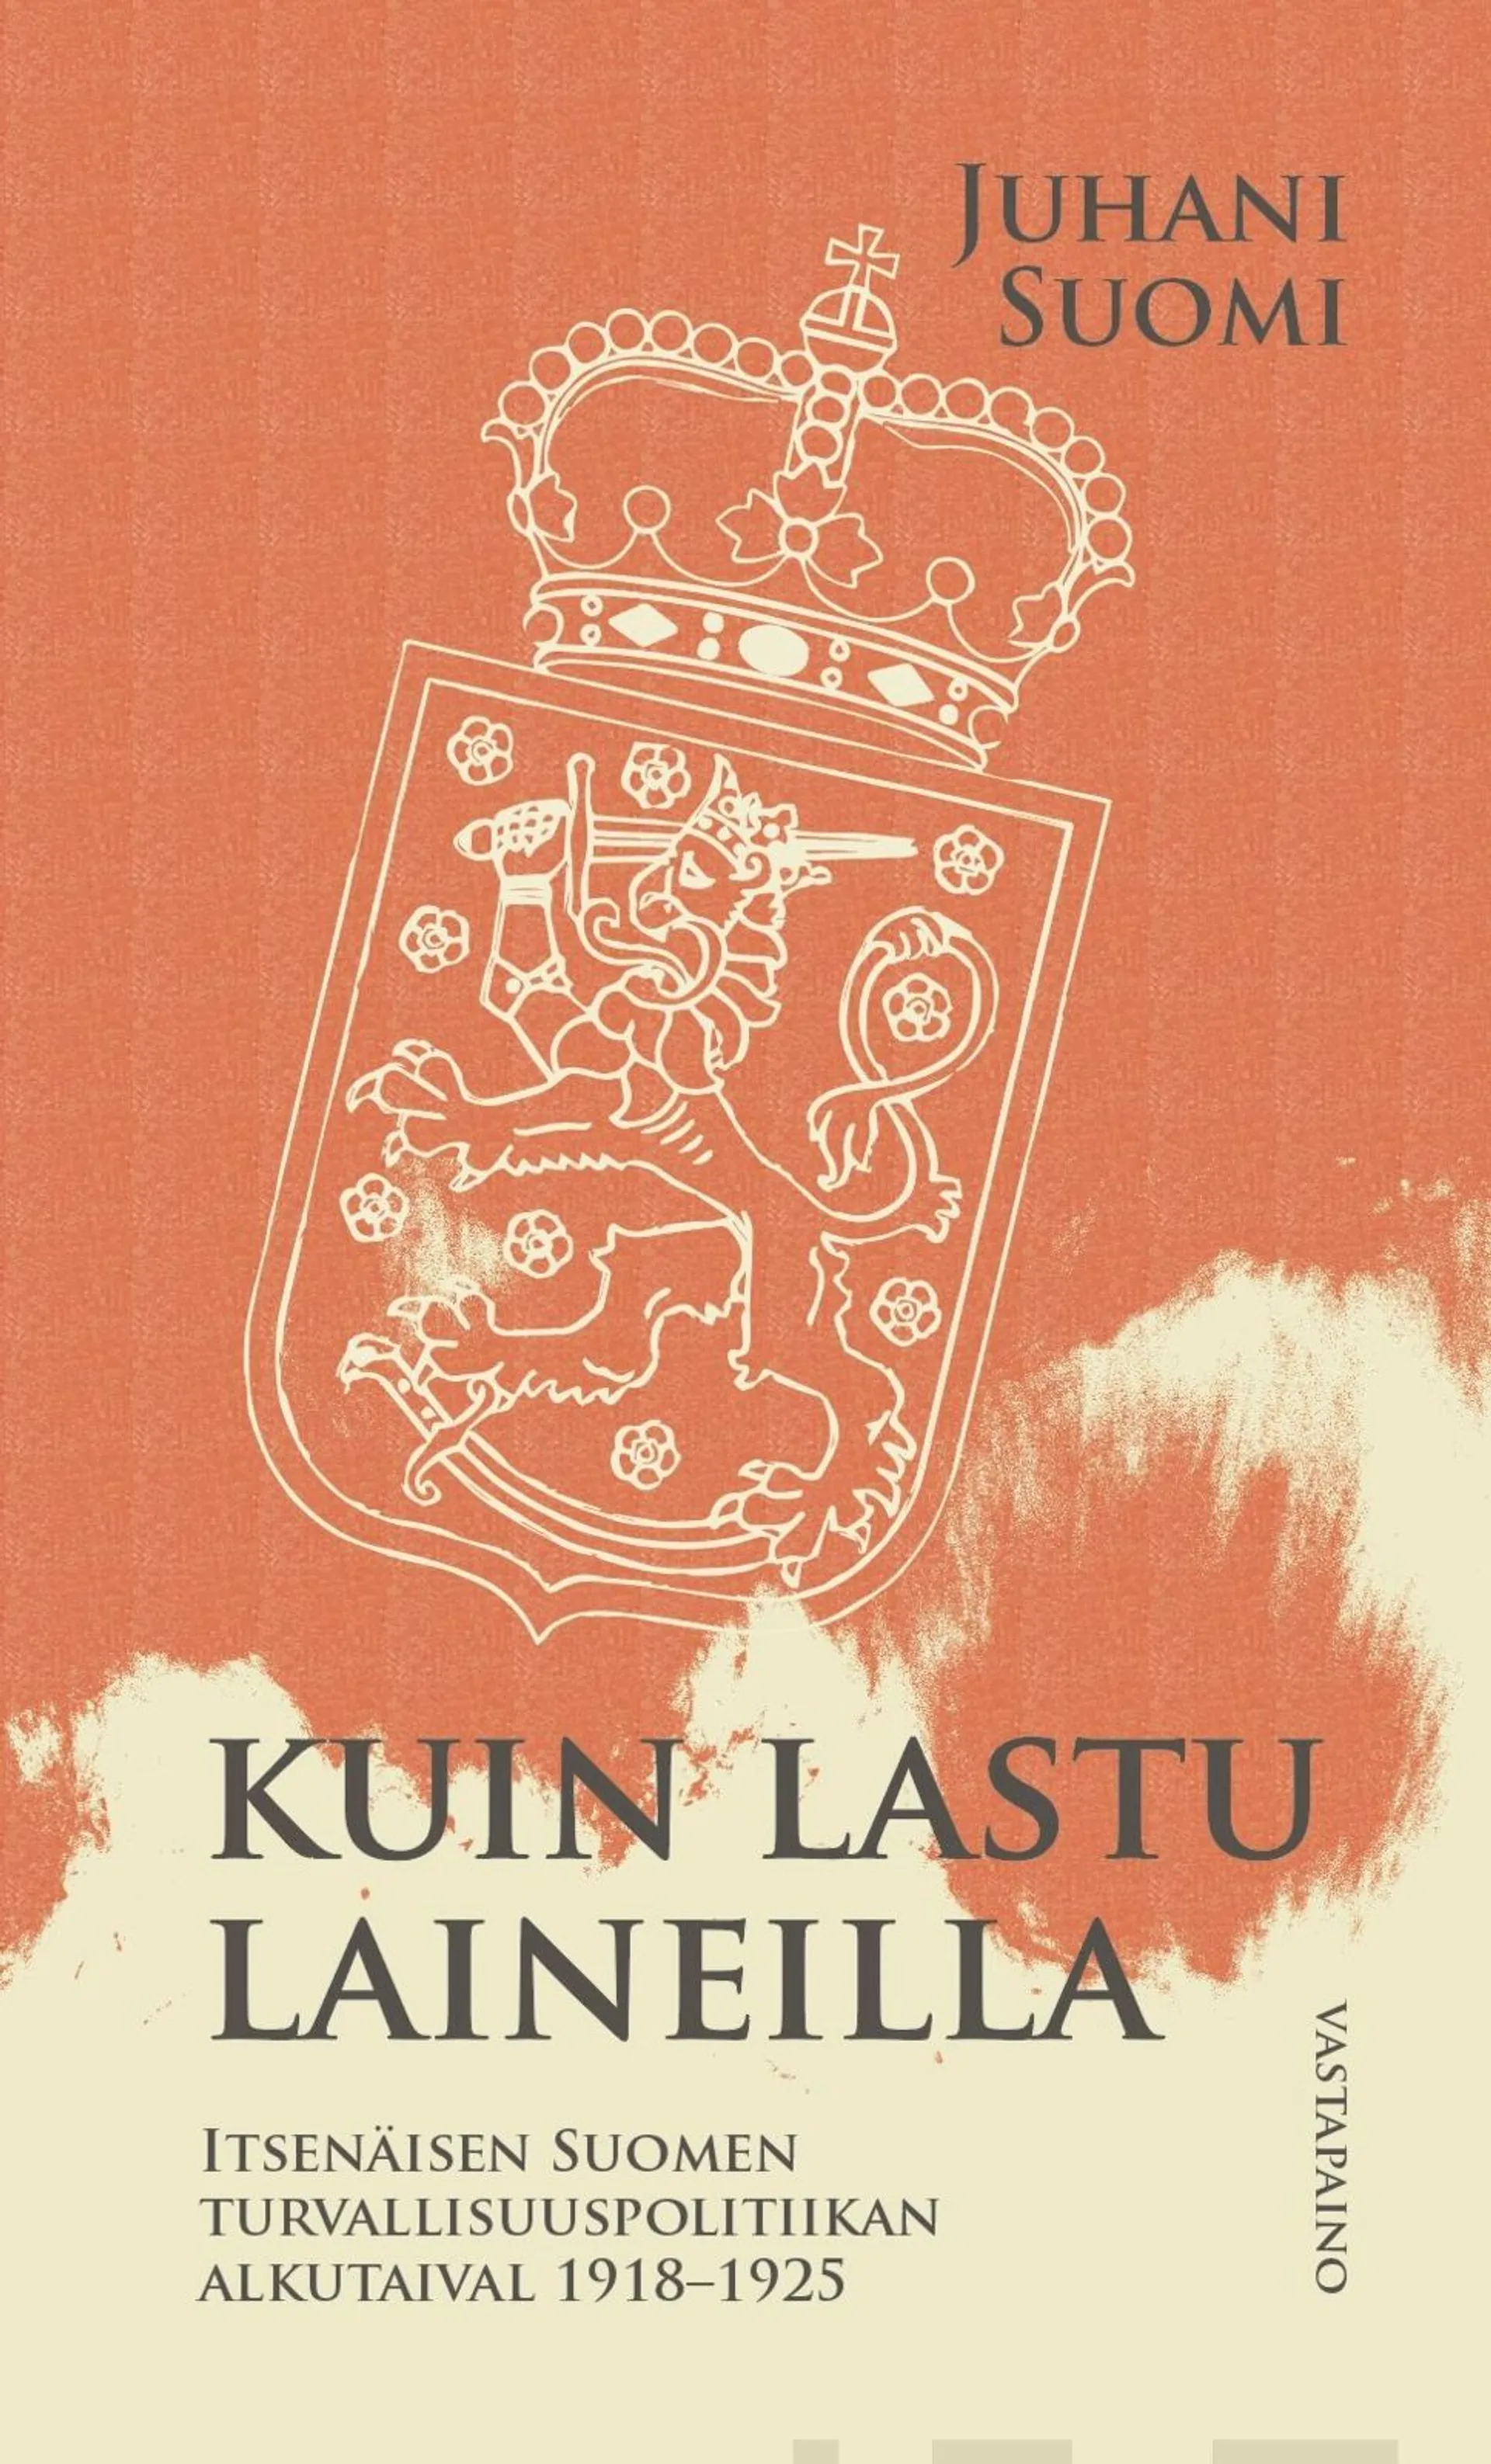 Suomi, Kuin lastu laineilla - Itsenäisen Suomen turvallisuuspolitiikan alkutaival 1918-1925